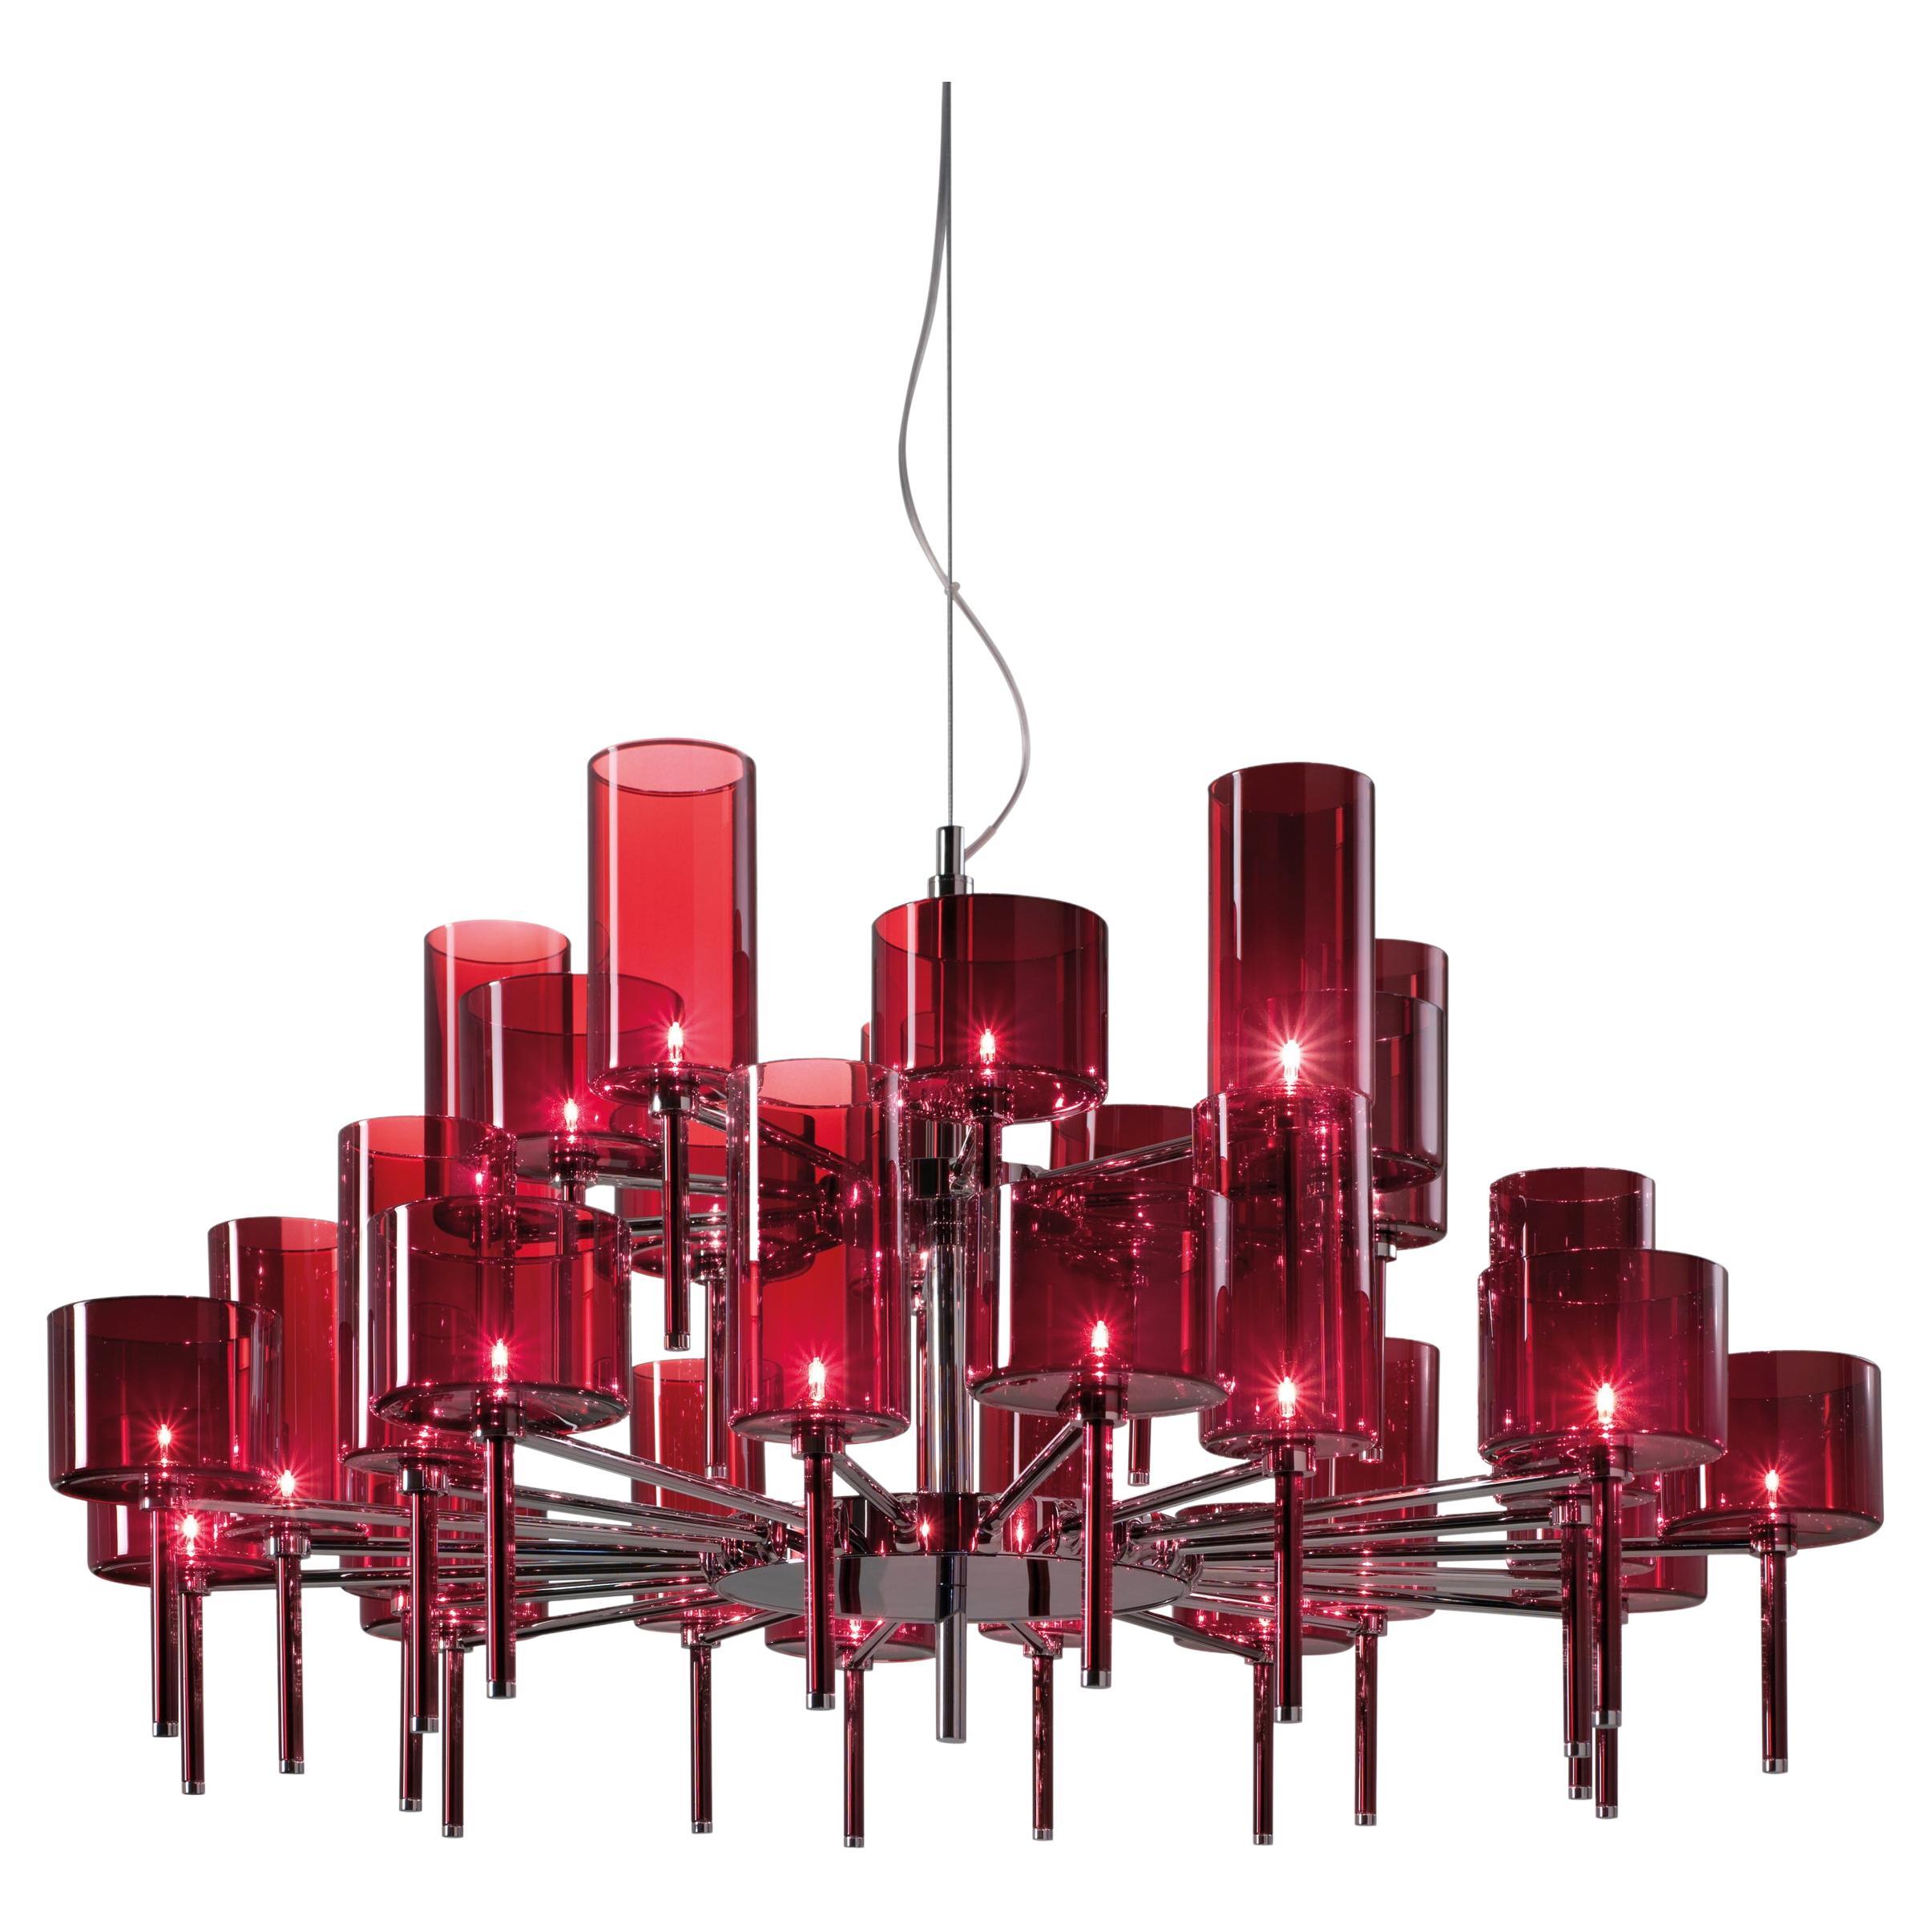 Axolight Spillray 30 Light Pendant Lamp in Red by Manuel & Vanessa Vivian